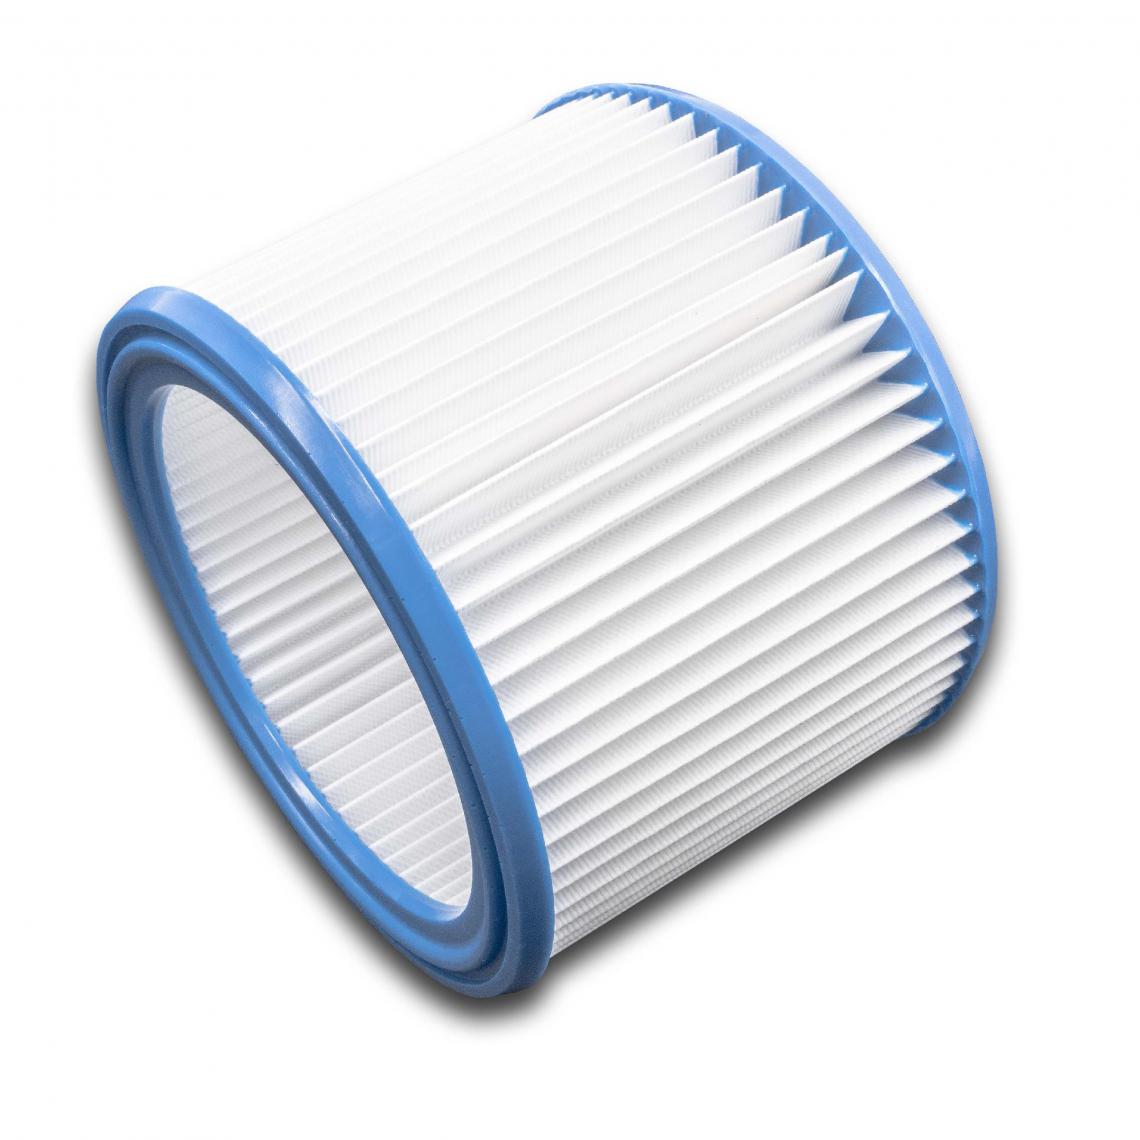 Vhbw - vhbw filtre rond à plis pour aspirateur multifonction compatible avec Protool VCP 260 E-L (up to 2010), VCP 10 E, VCP 260 E-M (up to 2010) - Cordons d'alimentation